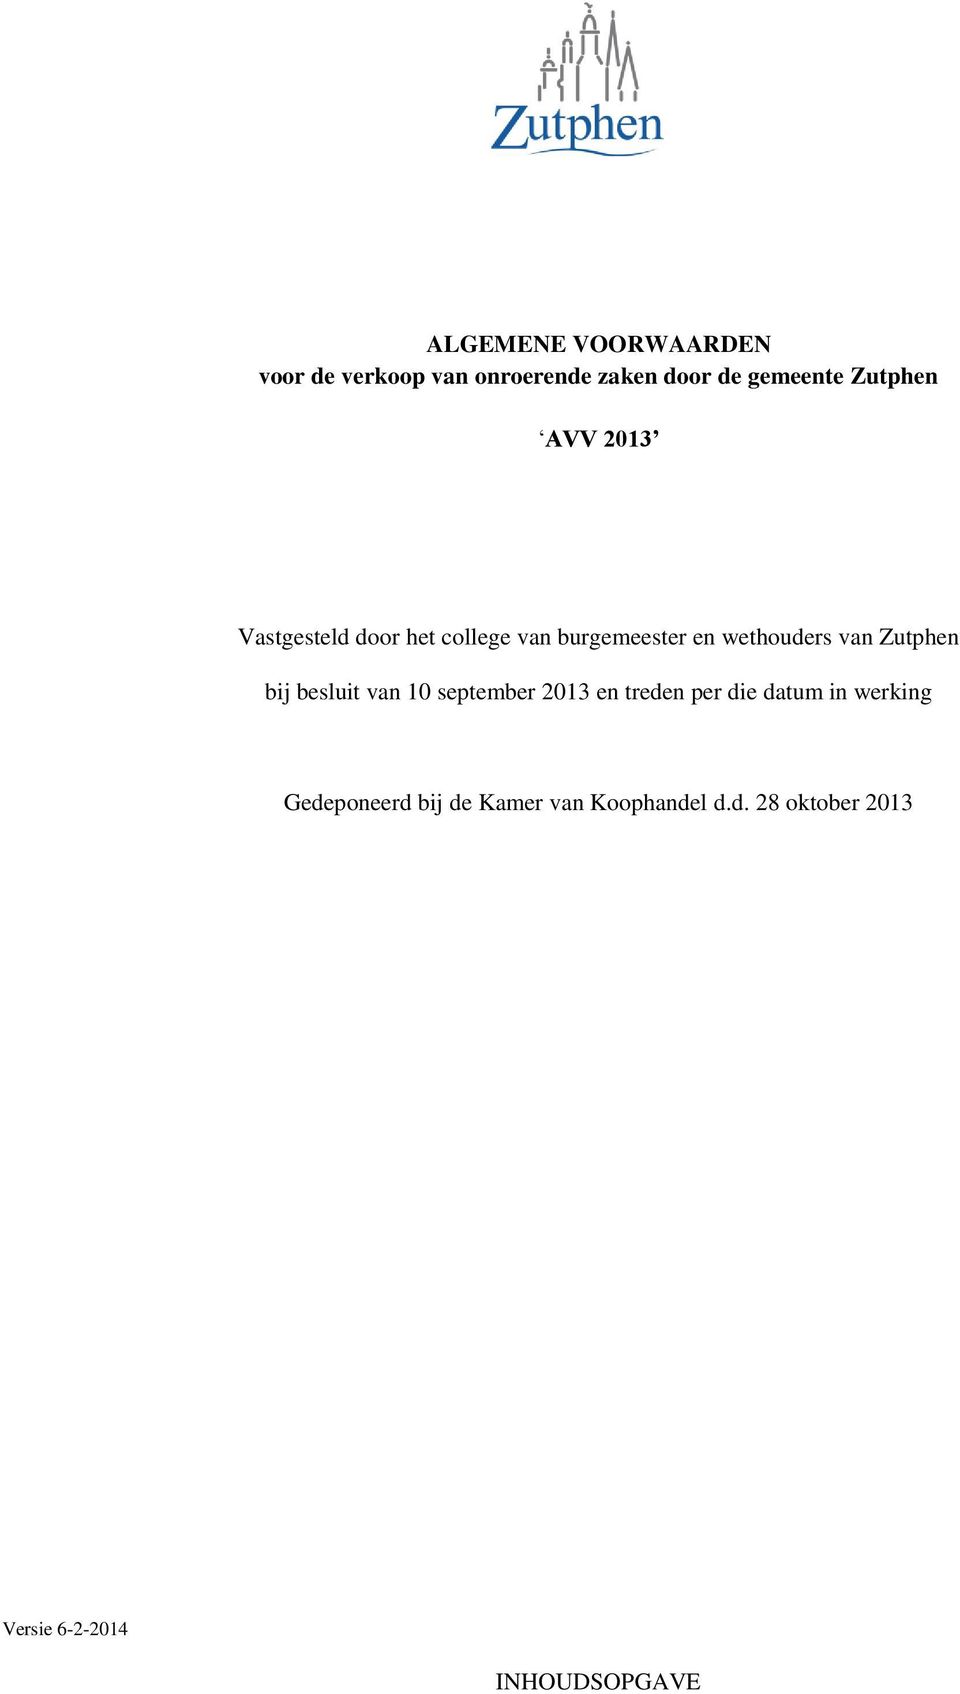 Zutphen bij besluit van 10 september 2013 en treden per die datum in werking